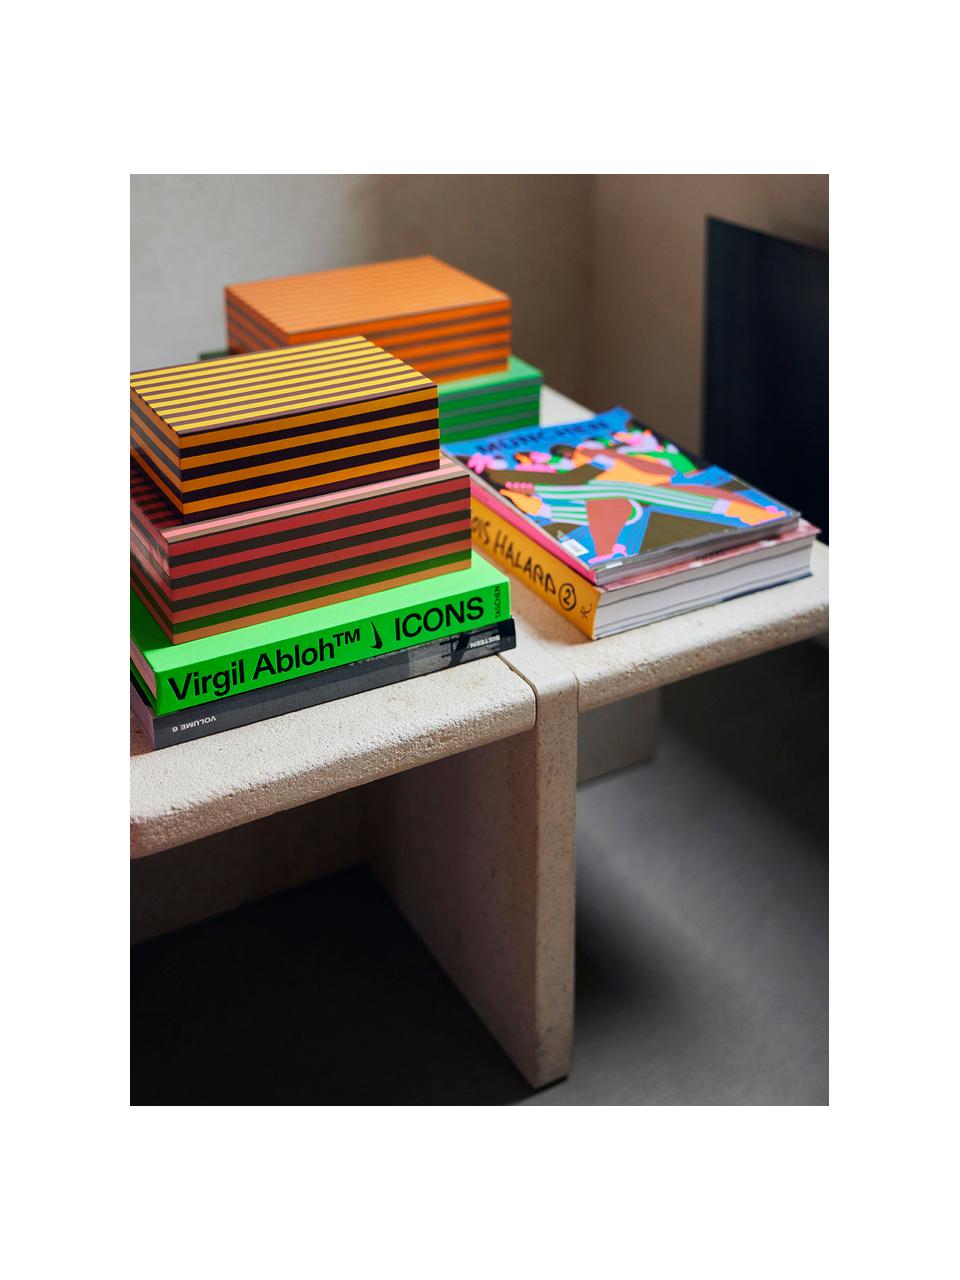 Set de cajas artesanales Dusk, 3 uds., Tablero de fibras de densidad media (MDF), poliresina, Multicolor, Set de diferentes tamaños